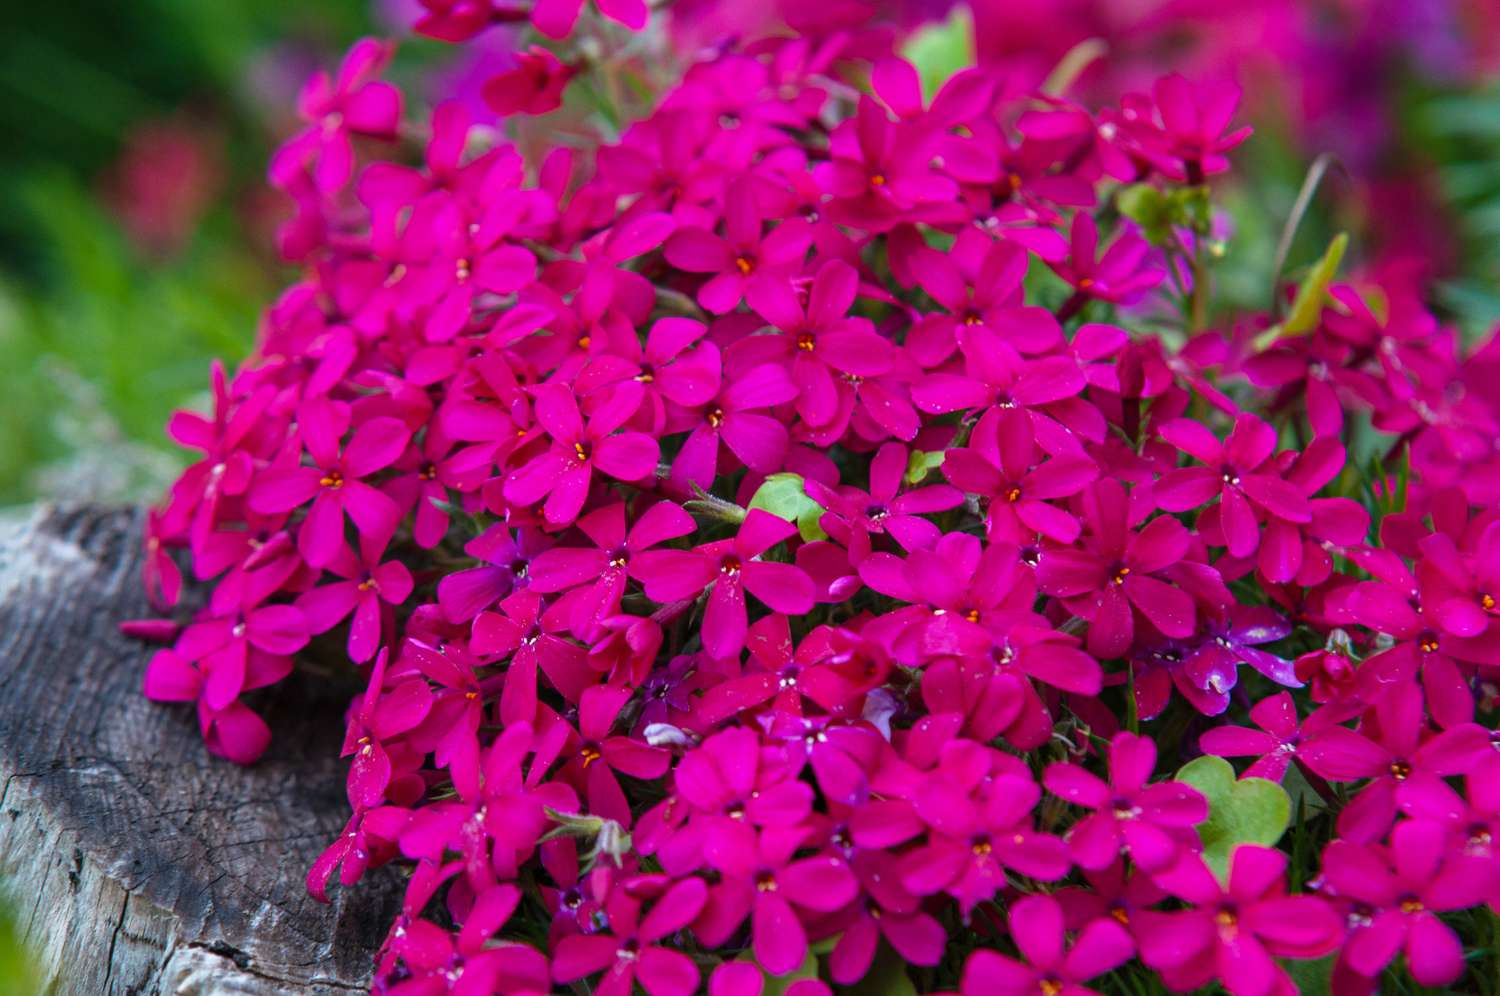 Planta phlox rasteira com flores rosa brilhantes agrupadas em um toco de árvore em close-up